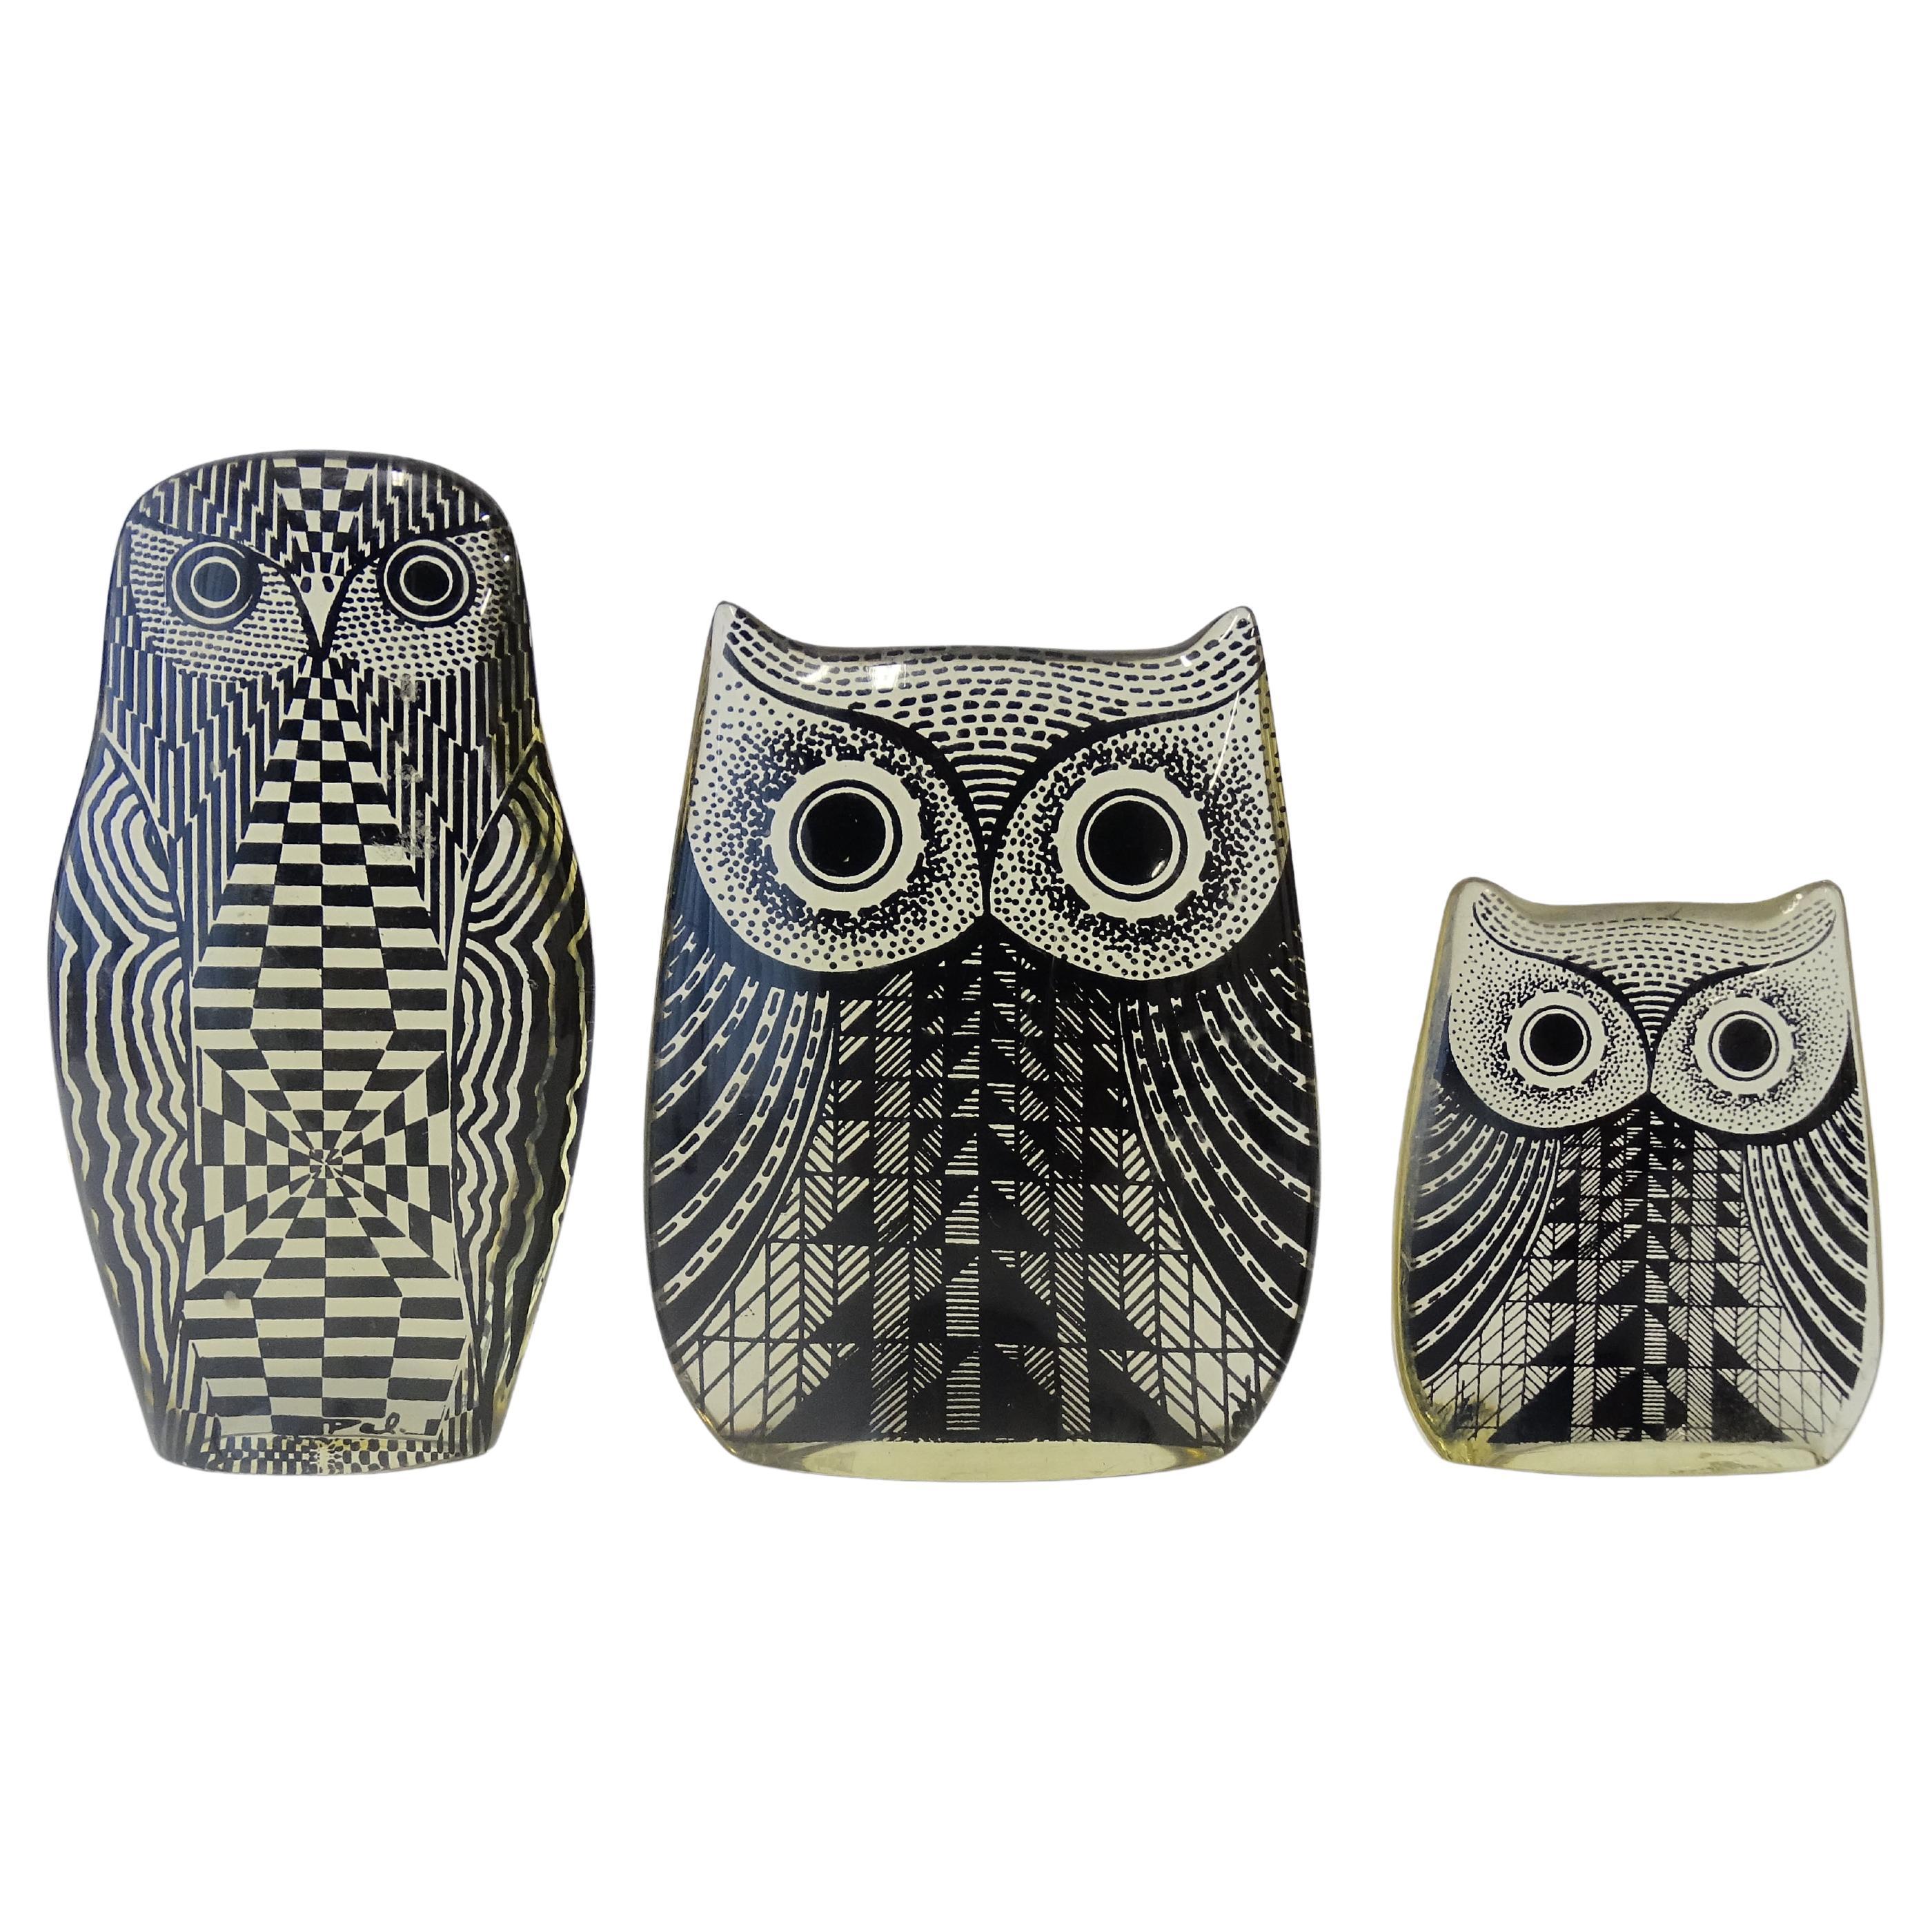 Abraham Palatnik set of three Op Art lucite owls, Brazil 1970s